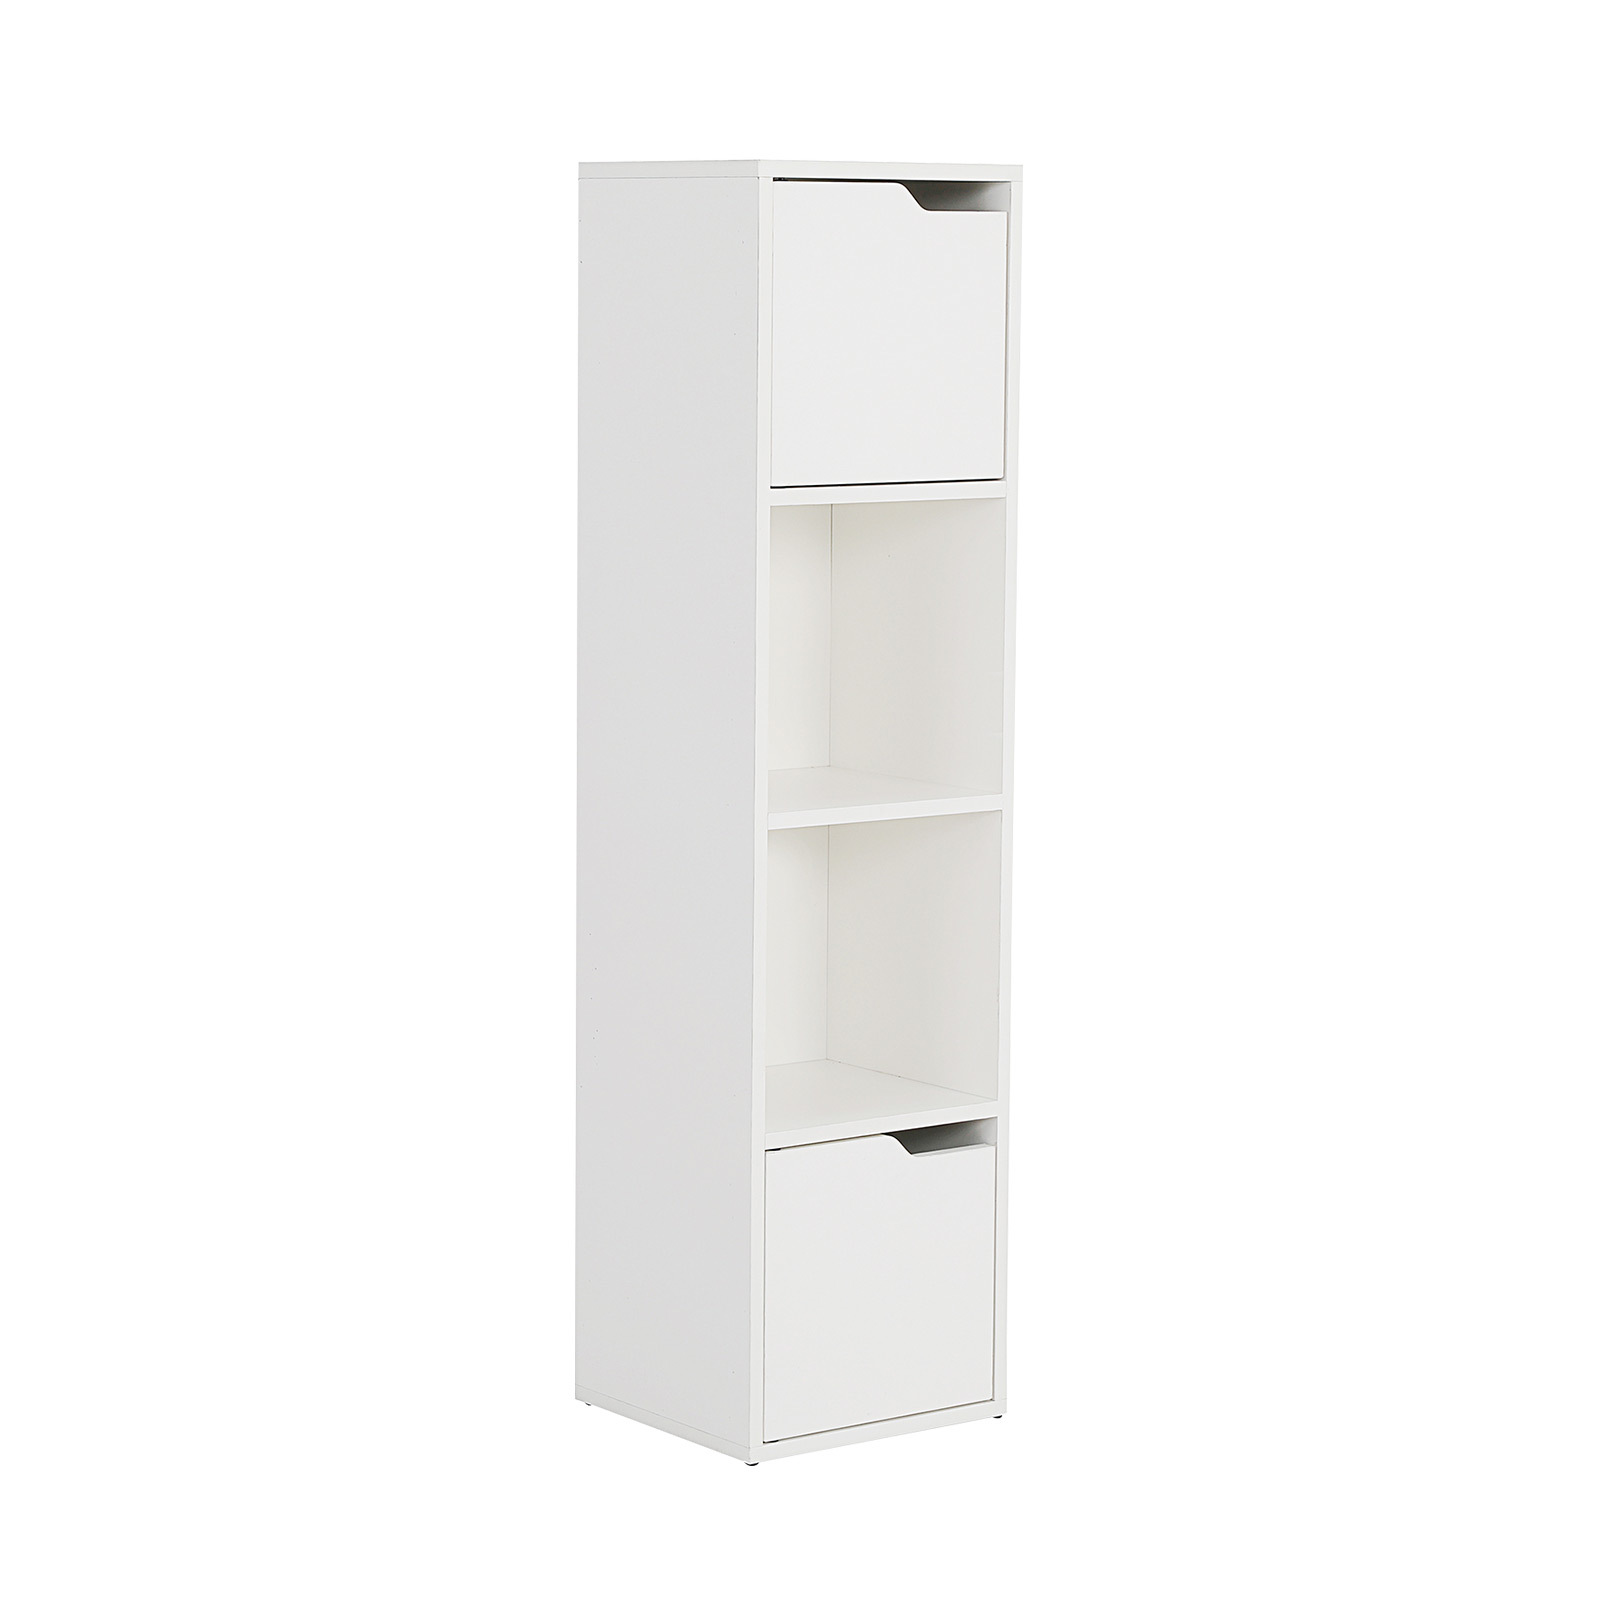 119cm Bathroom Storage Cabinet 4 Tier - WHITE